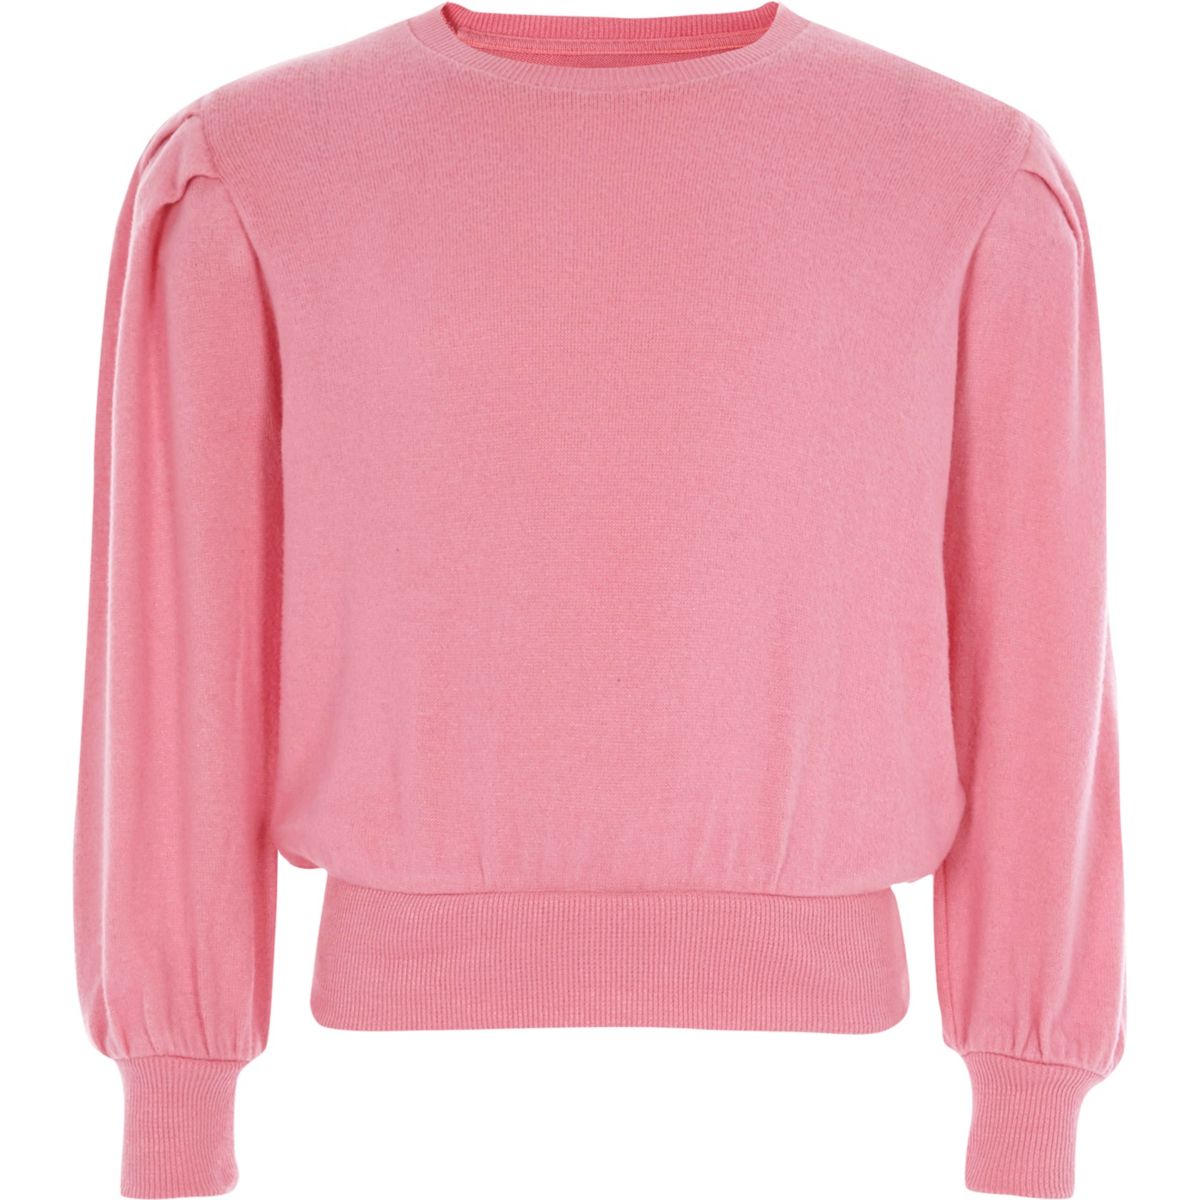 Girls pink puff long sleeve jumper - Tops - Sale - girls